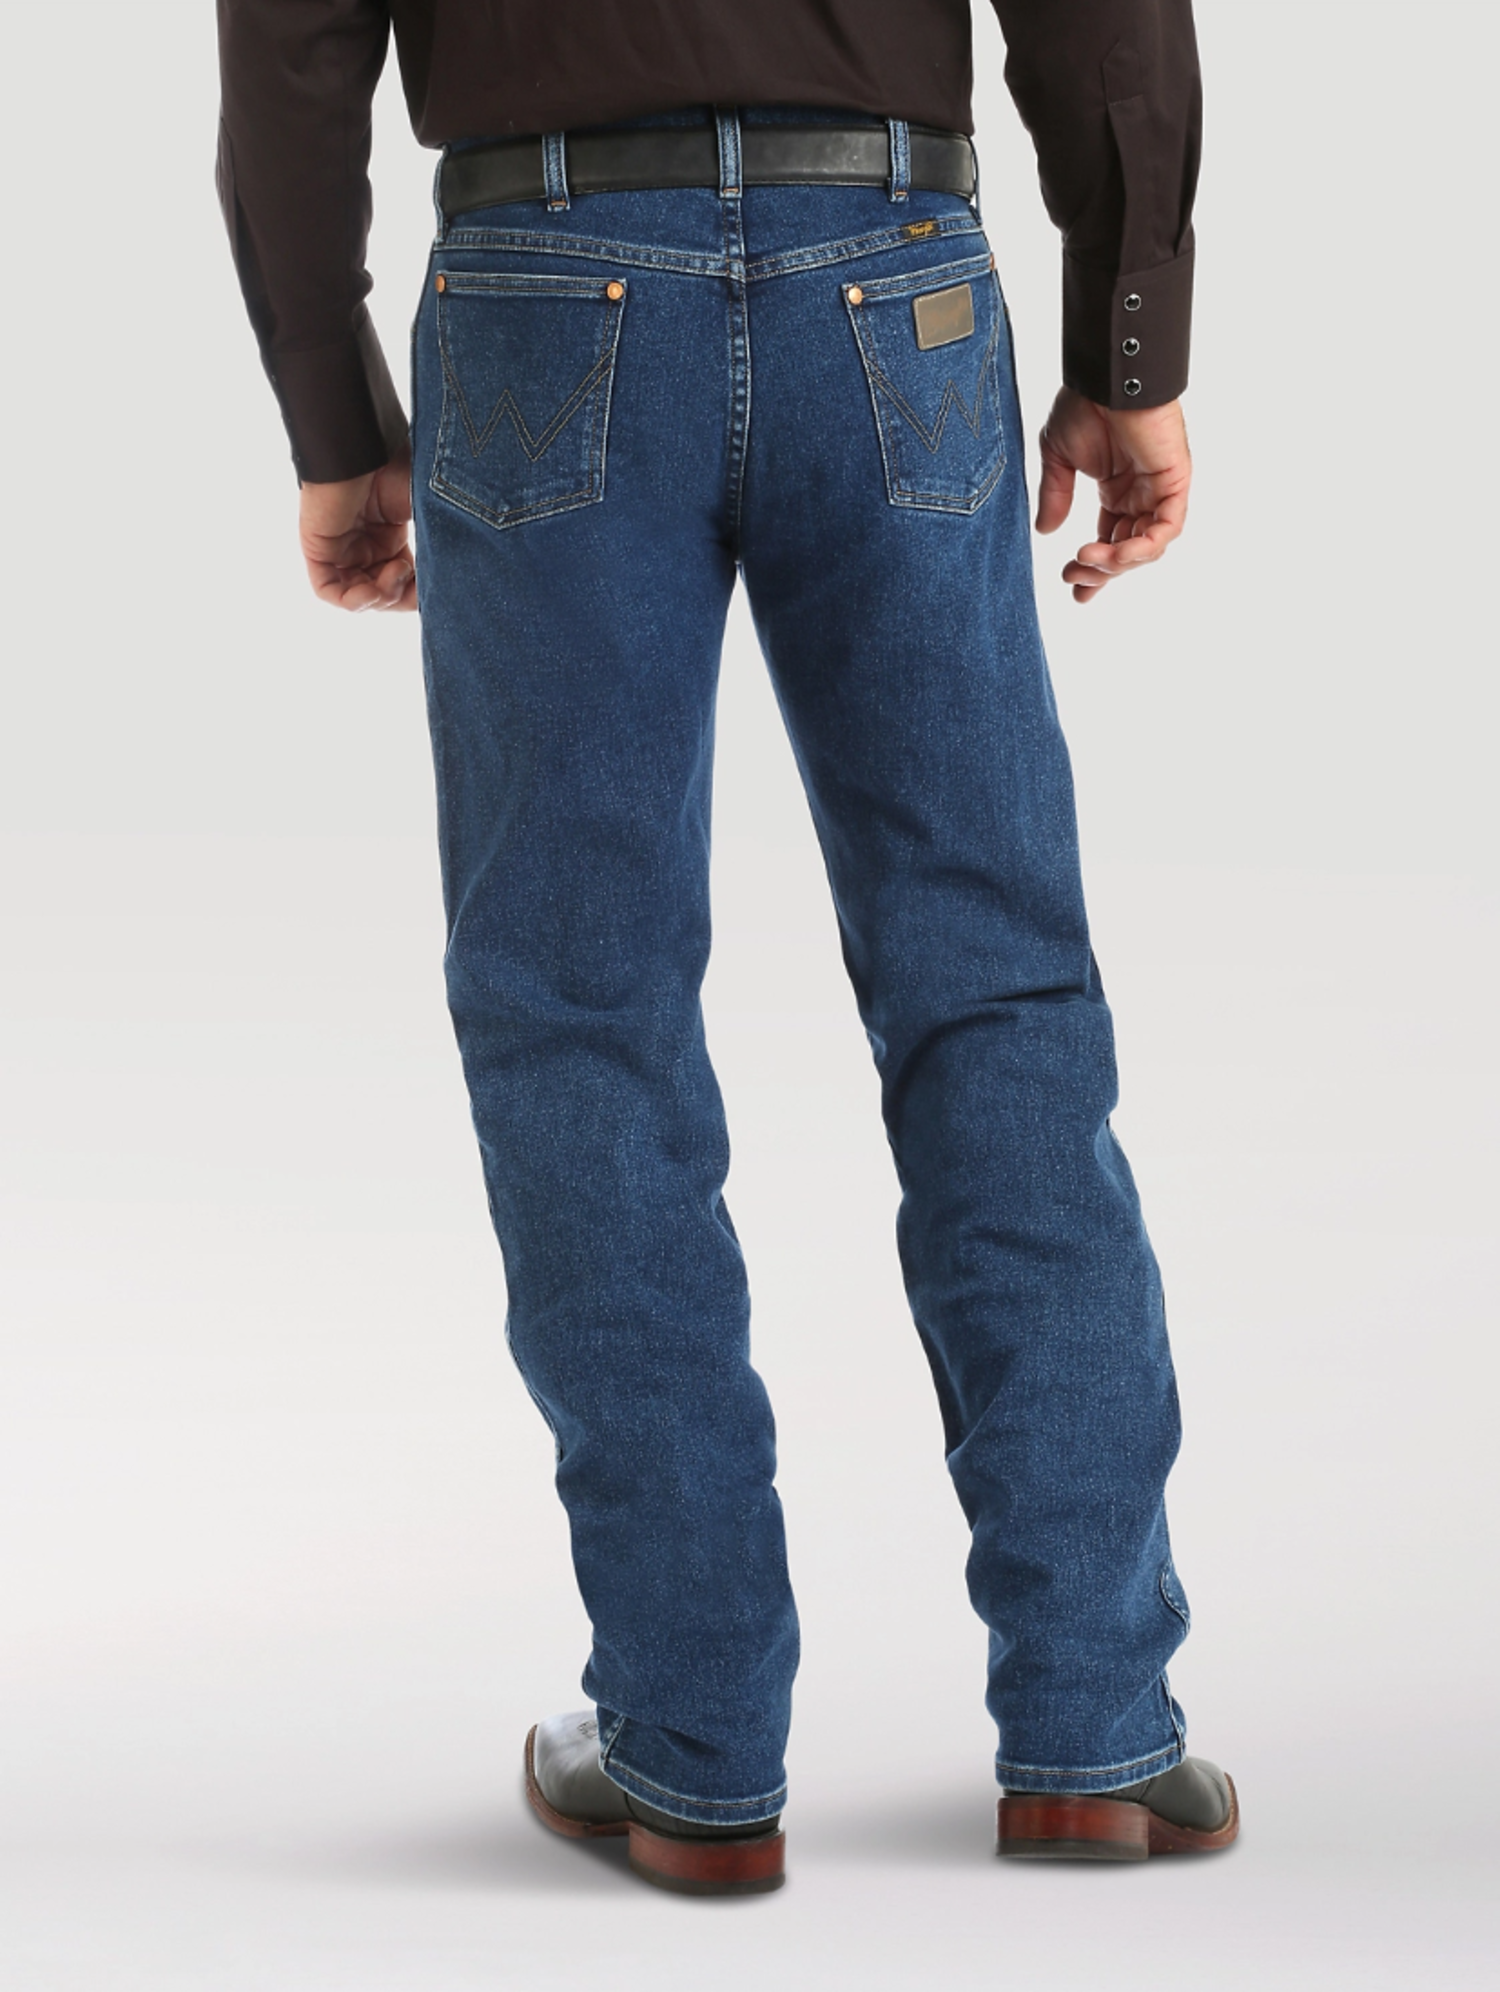 https://cdn.shoplightspeed.com/shops/633771/files/30719504/1500x4000x3/wrangler-cowboy-cut-original-fit-active-flex-jeans.jpg